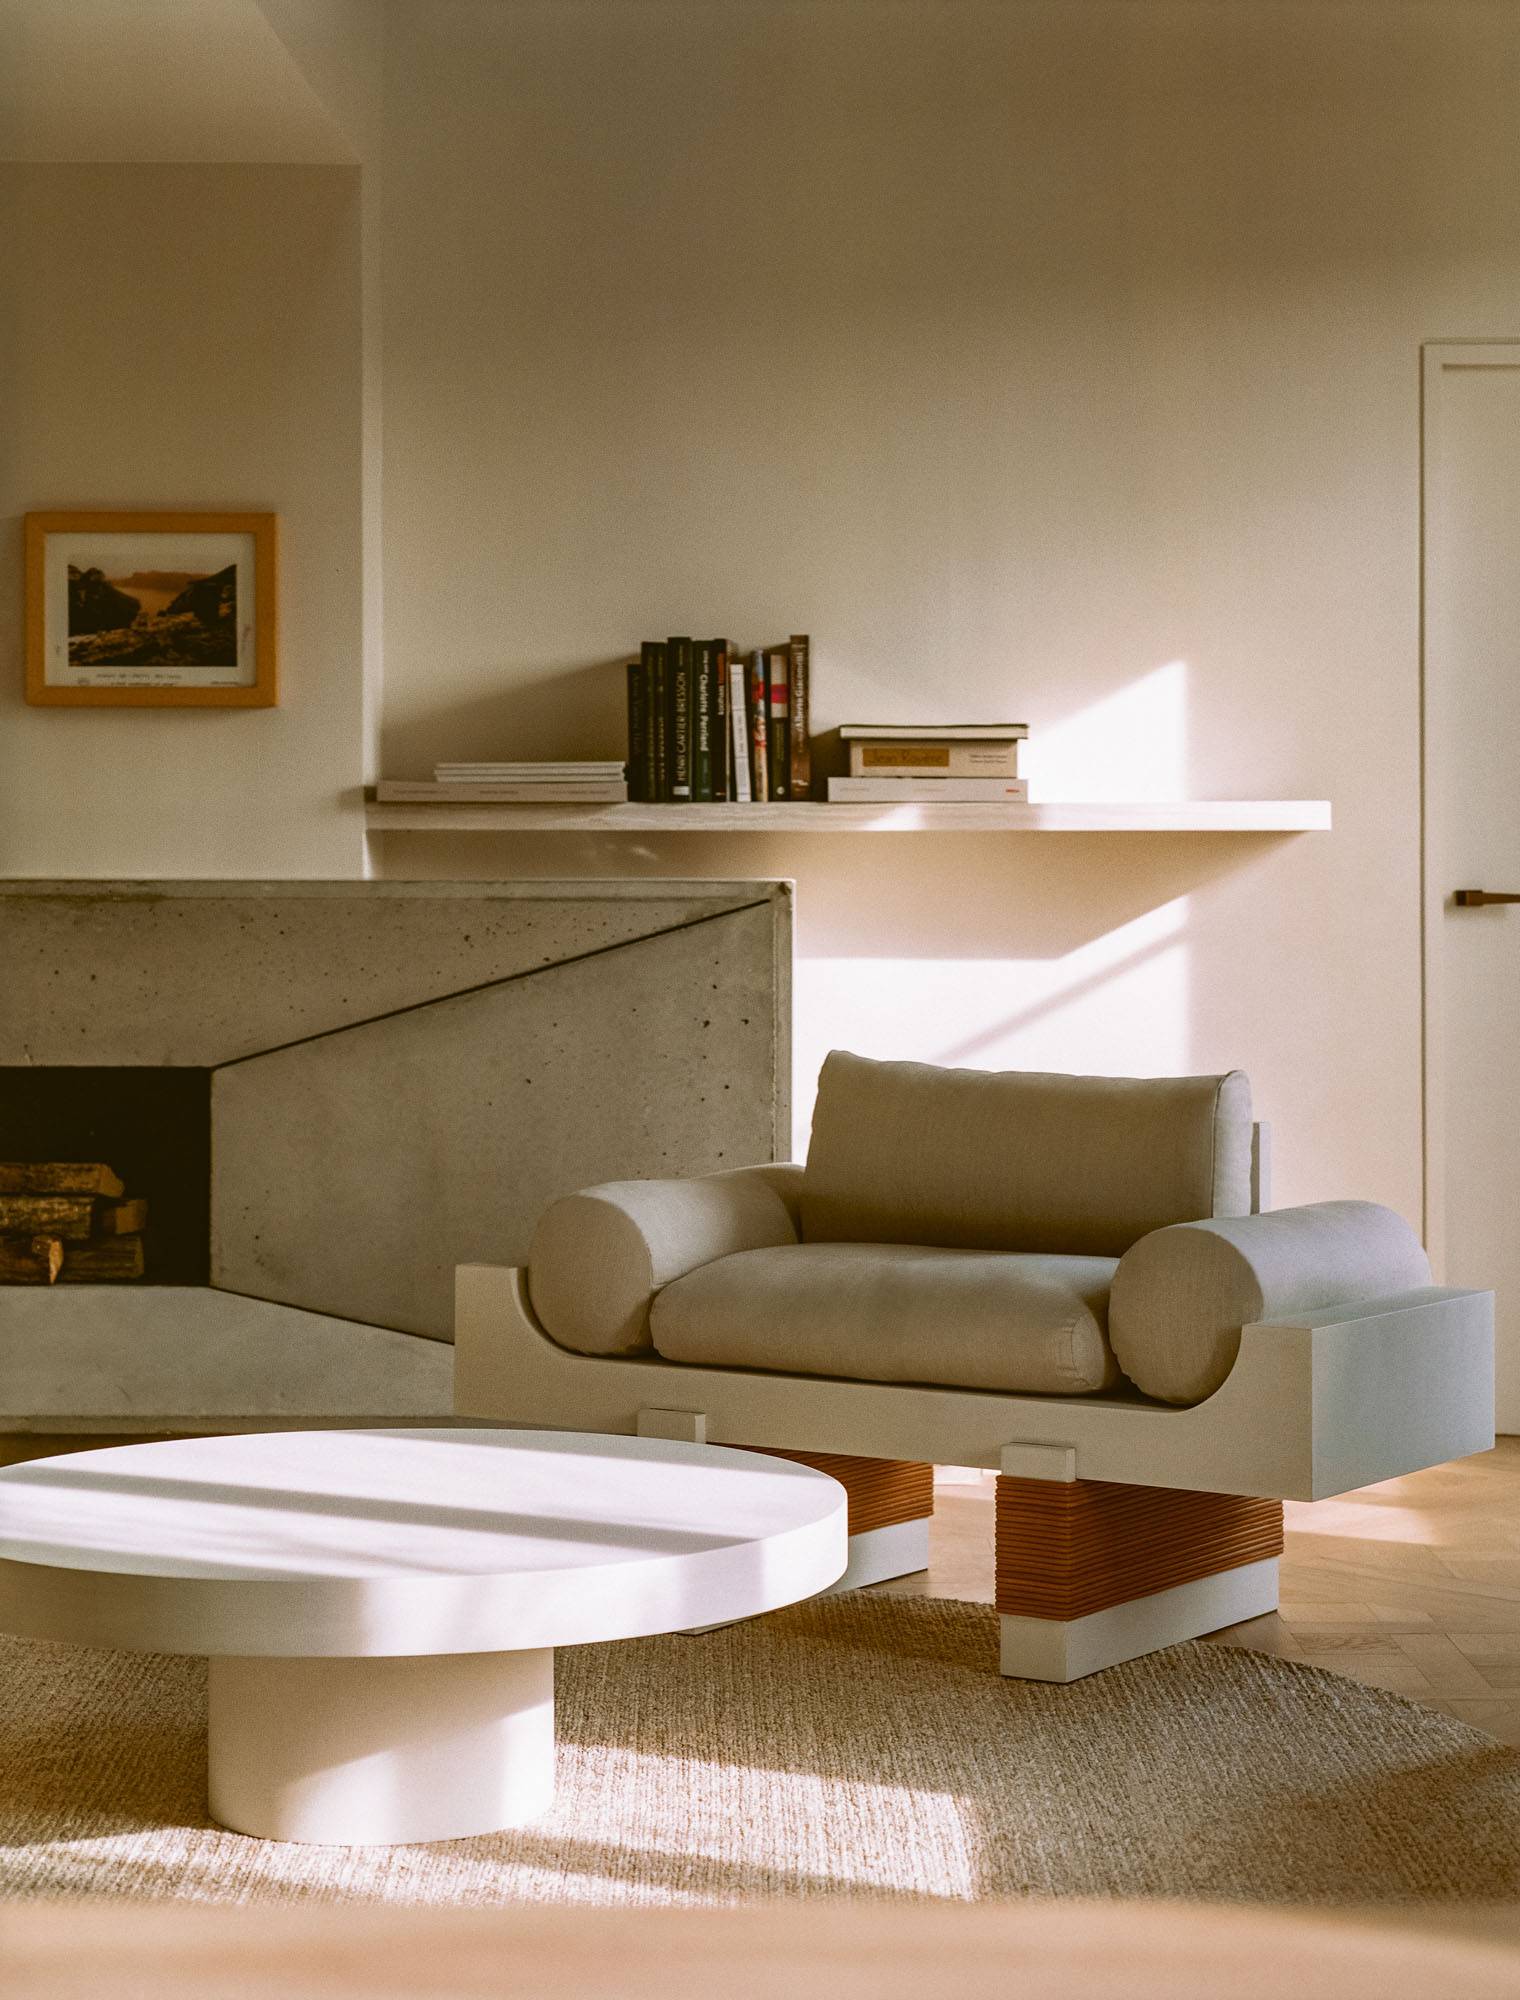 Isabelle Stanislas to jedna z najwybitniejszych francuskich architektek  